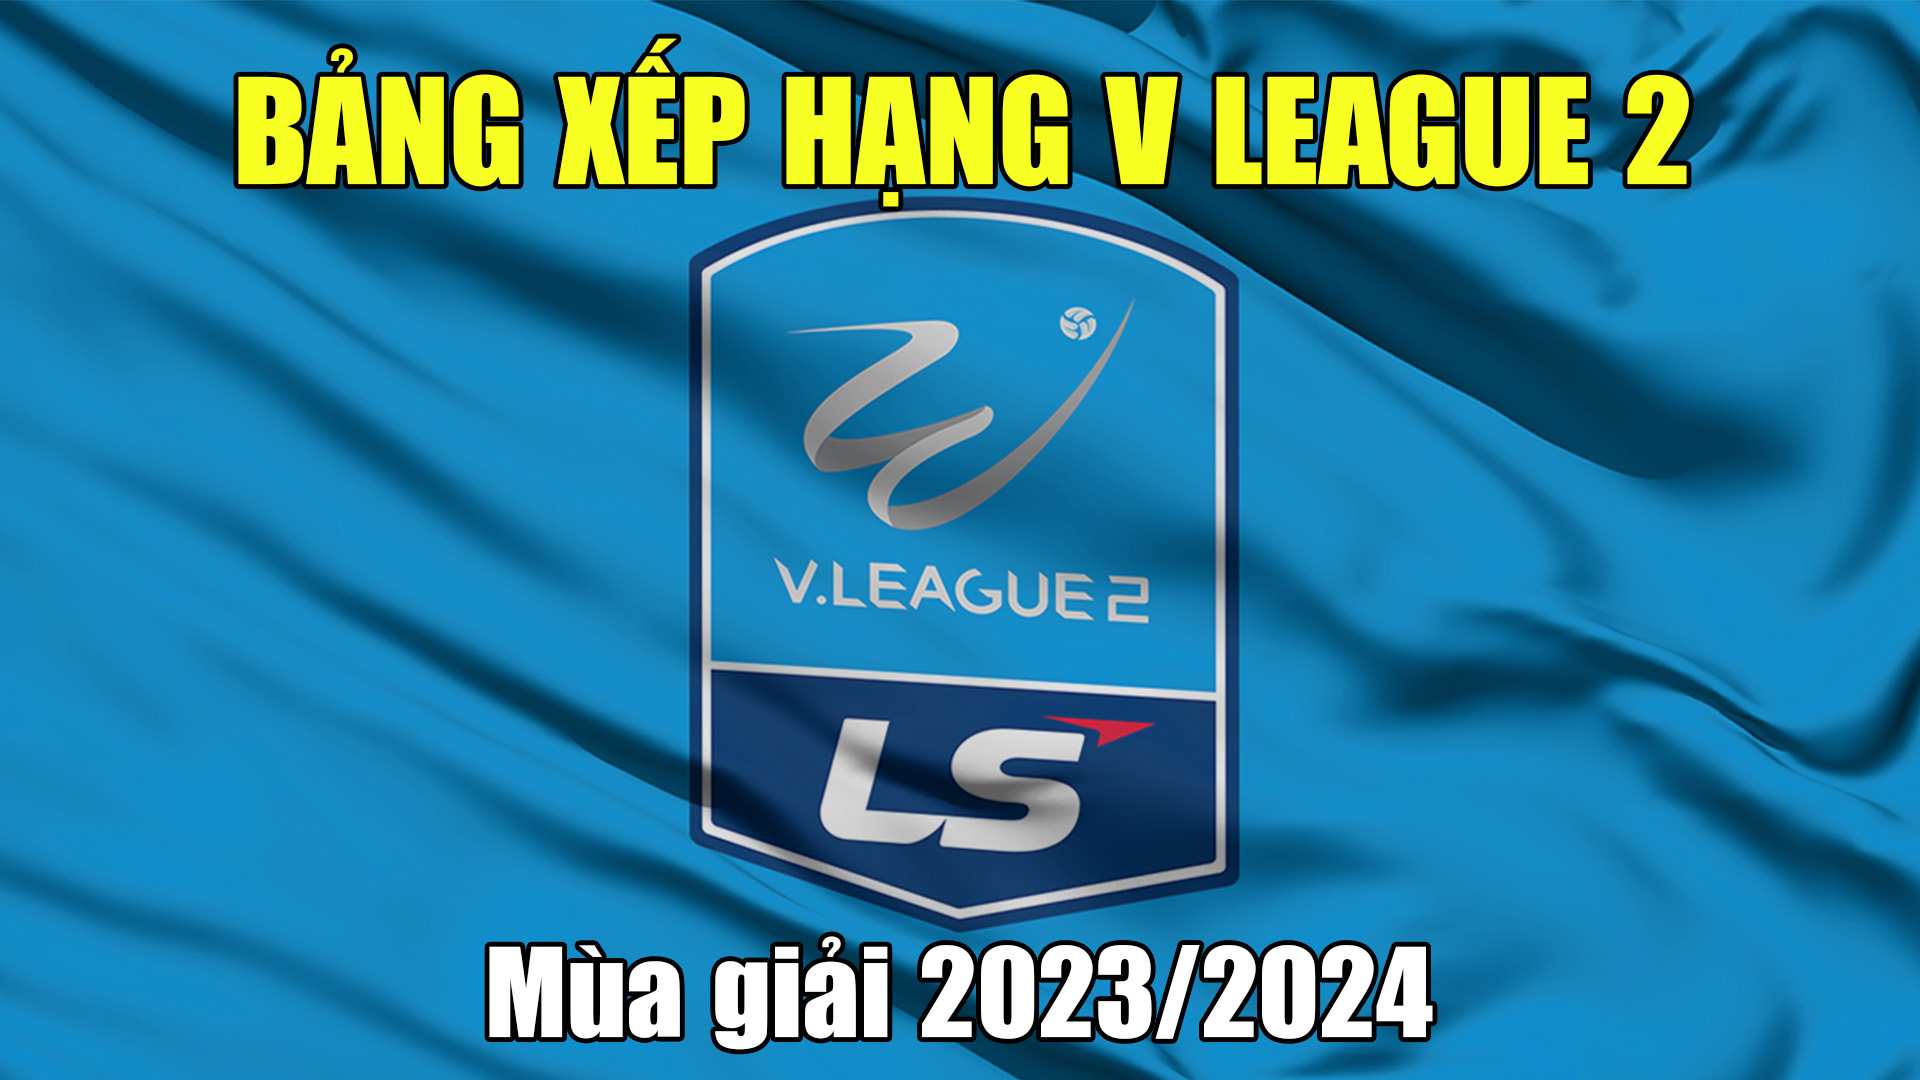 BXH V League 2 - BXH Hạng Nhất Việt Nam mùa giải mới nhất